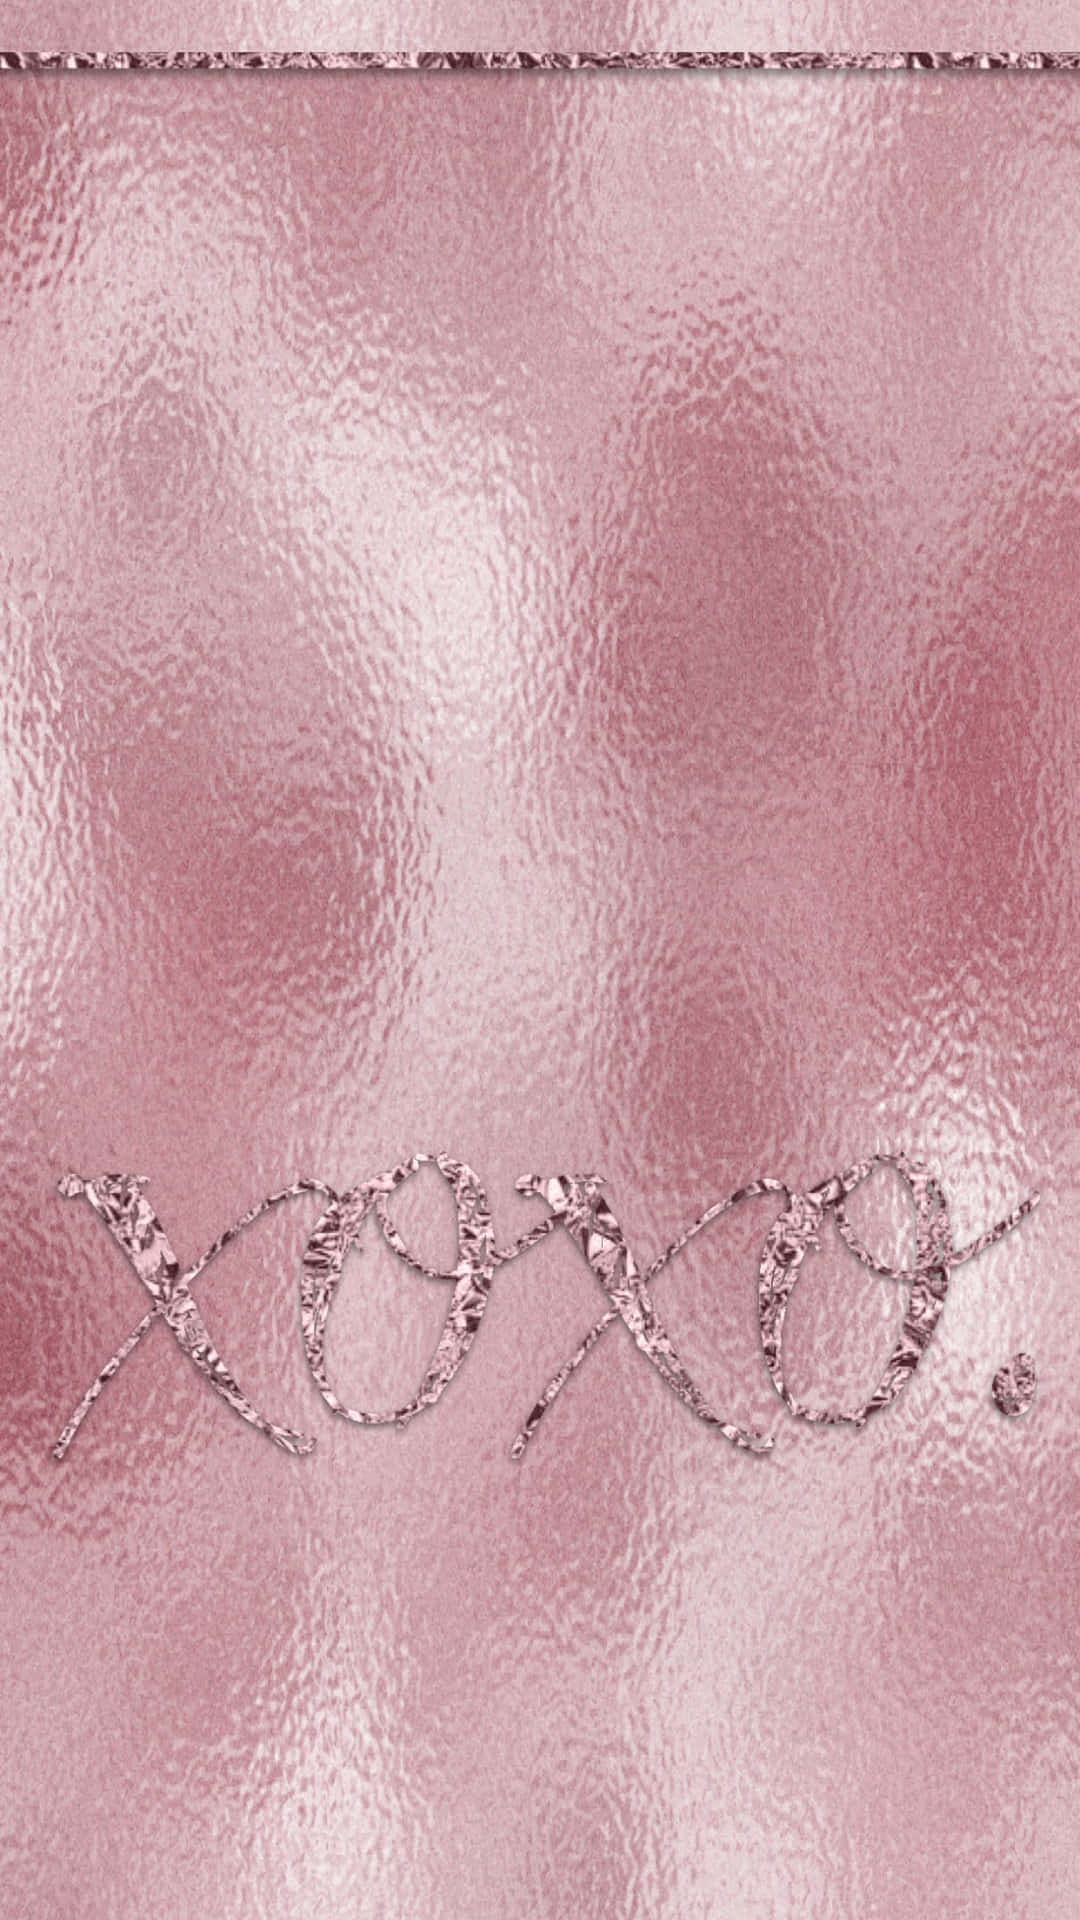 Et skær af Rose Guld Kontrasteret af Stål. Wallpaper